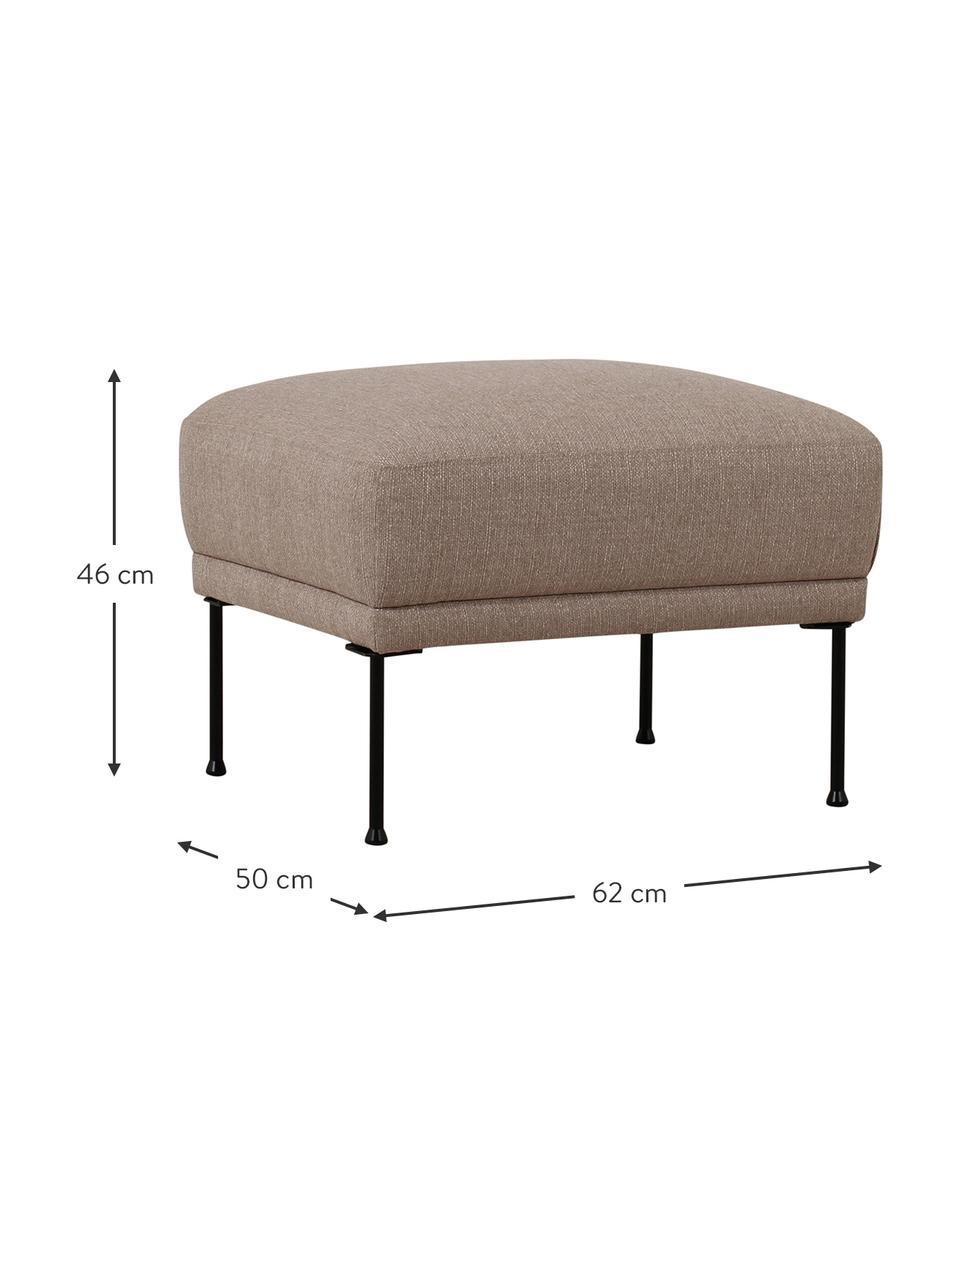 Sofa-Hocker Fluente mit Metall-Füssen, Bezug: 100% Polyester 35.000 Sch, Gestell: Massives Kiefernholz, FSC, Webstoff Taupe, B 62 x H 46 cm